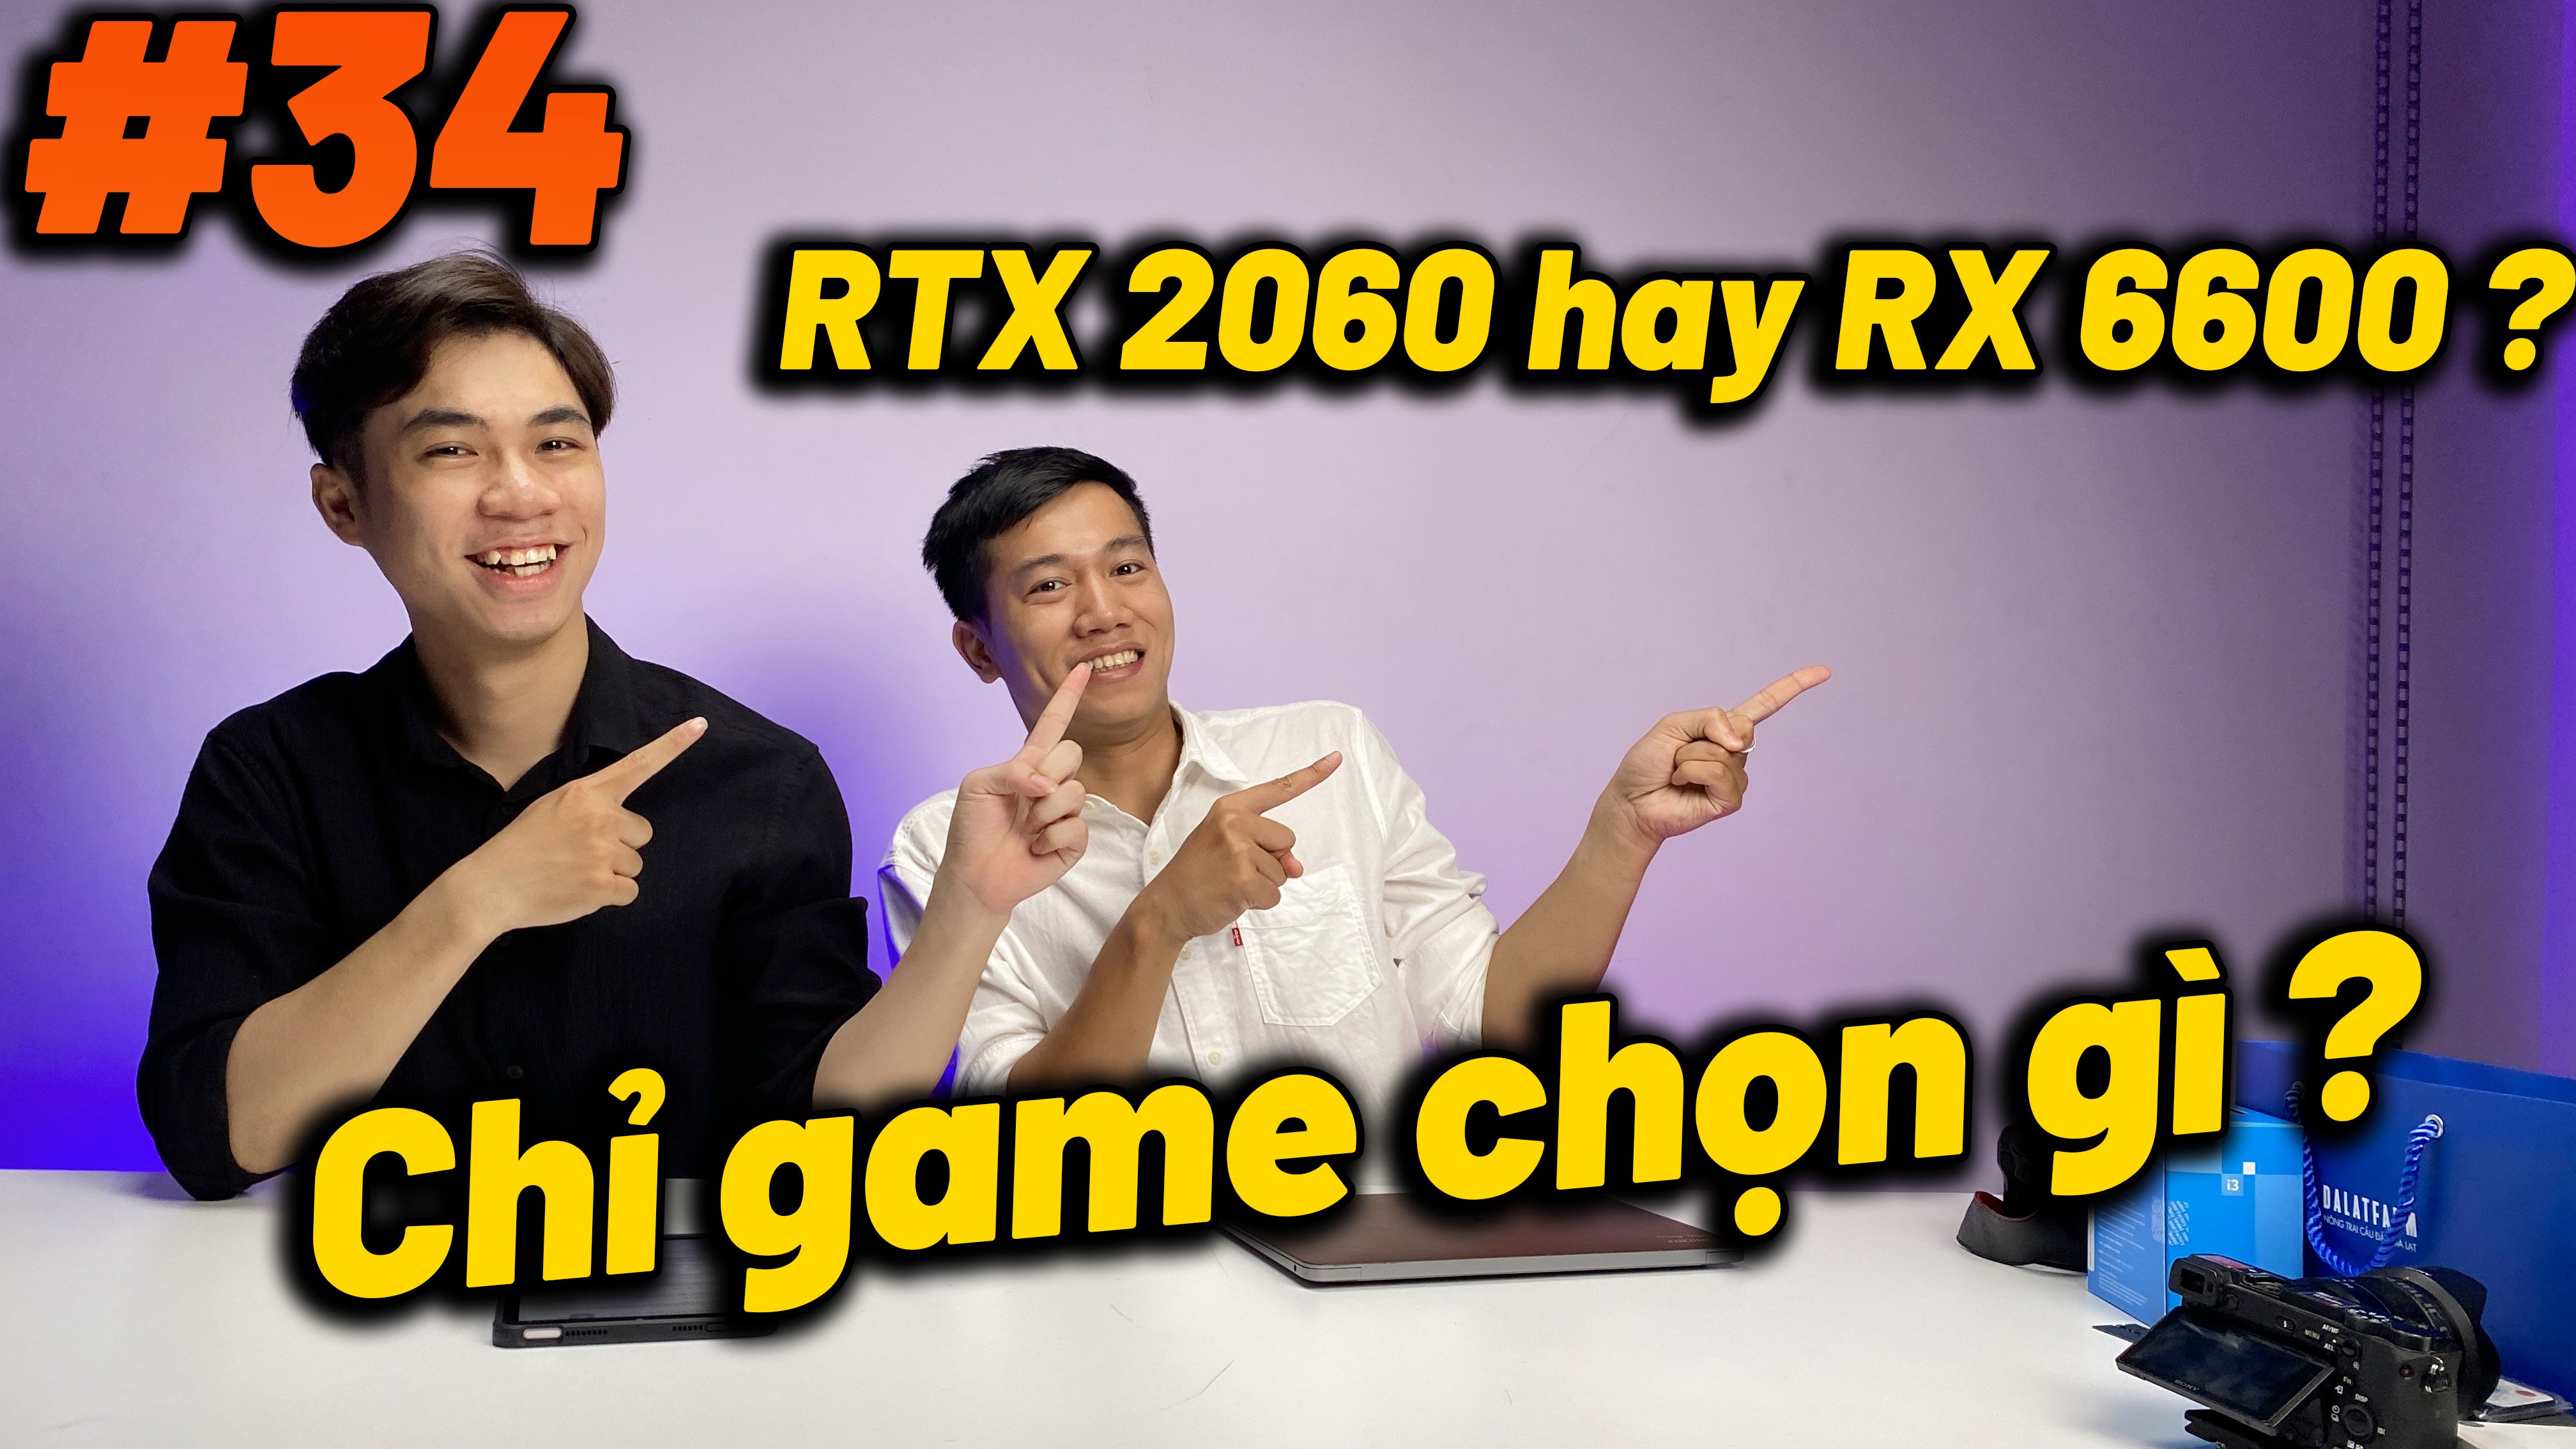 Hỏi đáp: RTX 2060 có hiệu năng chơi game ngang ngửa RX 6600